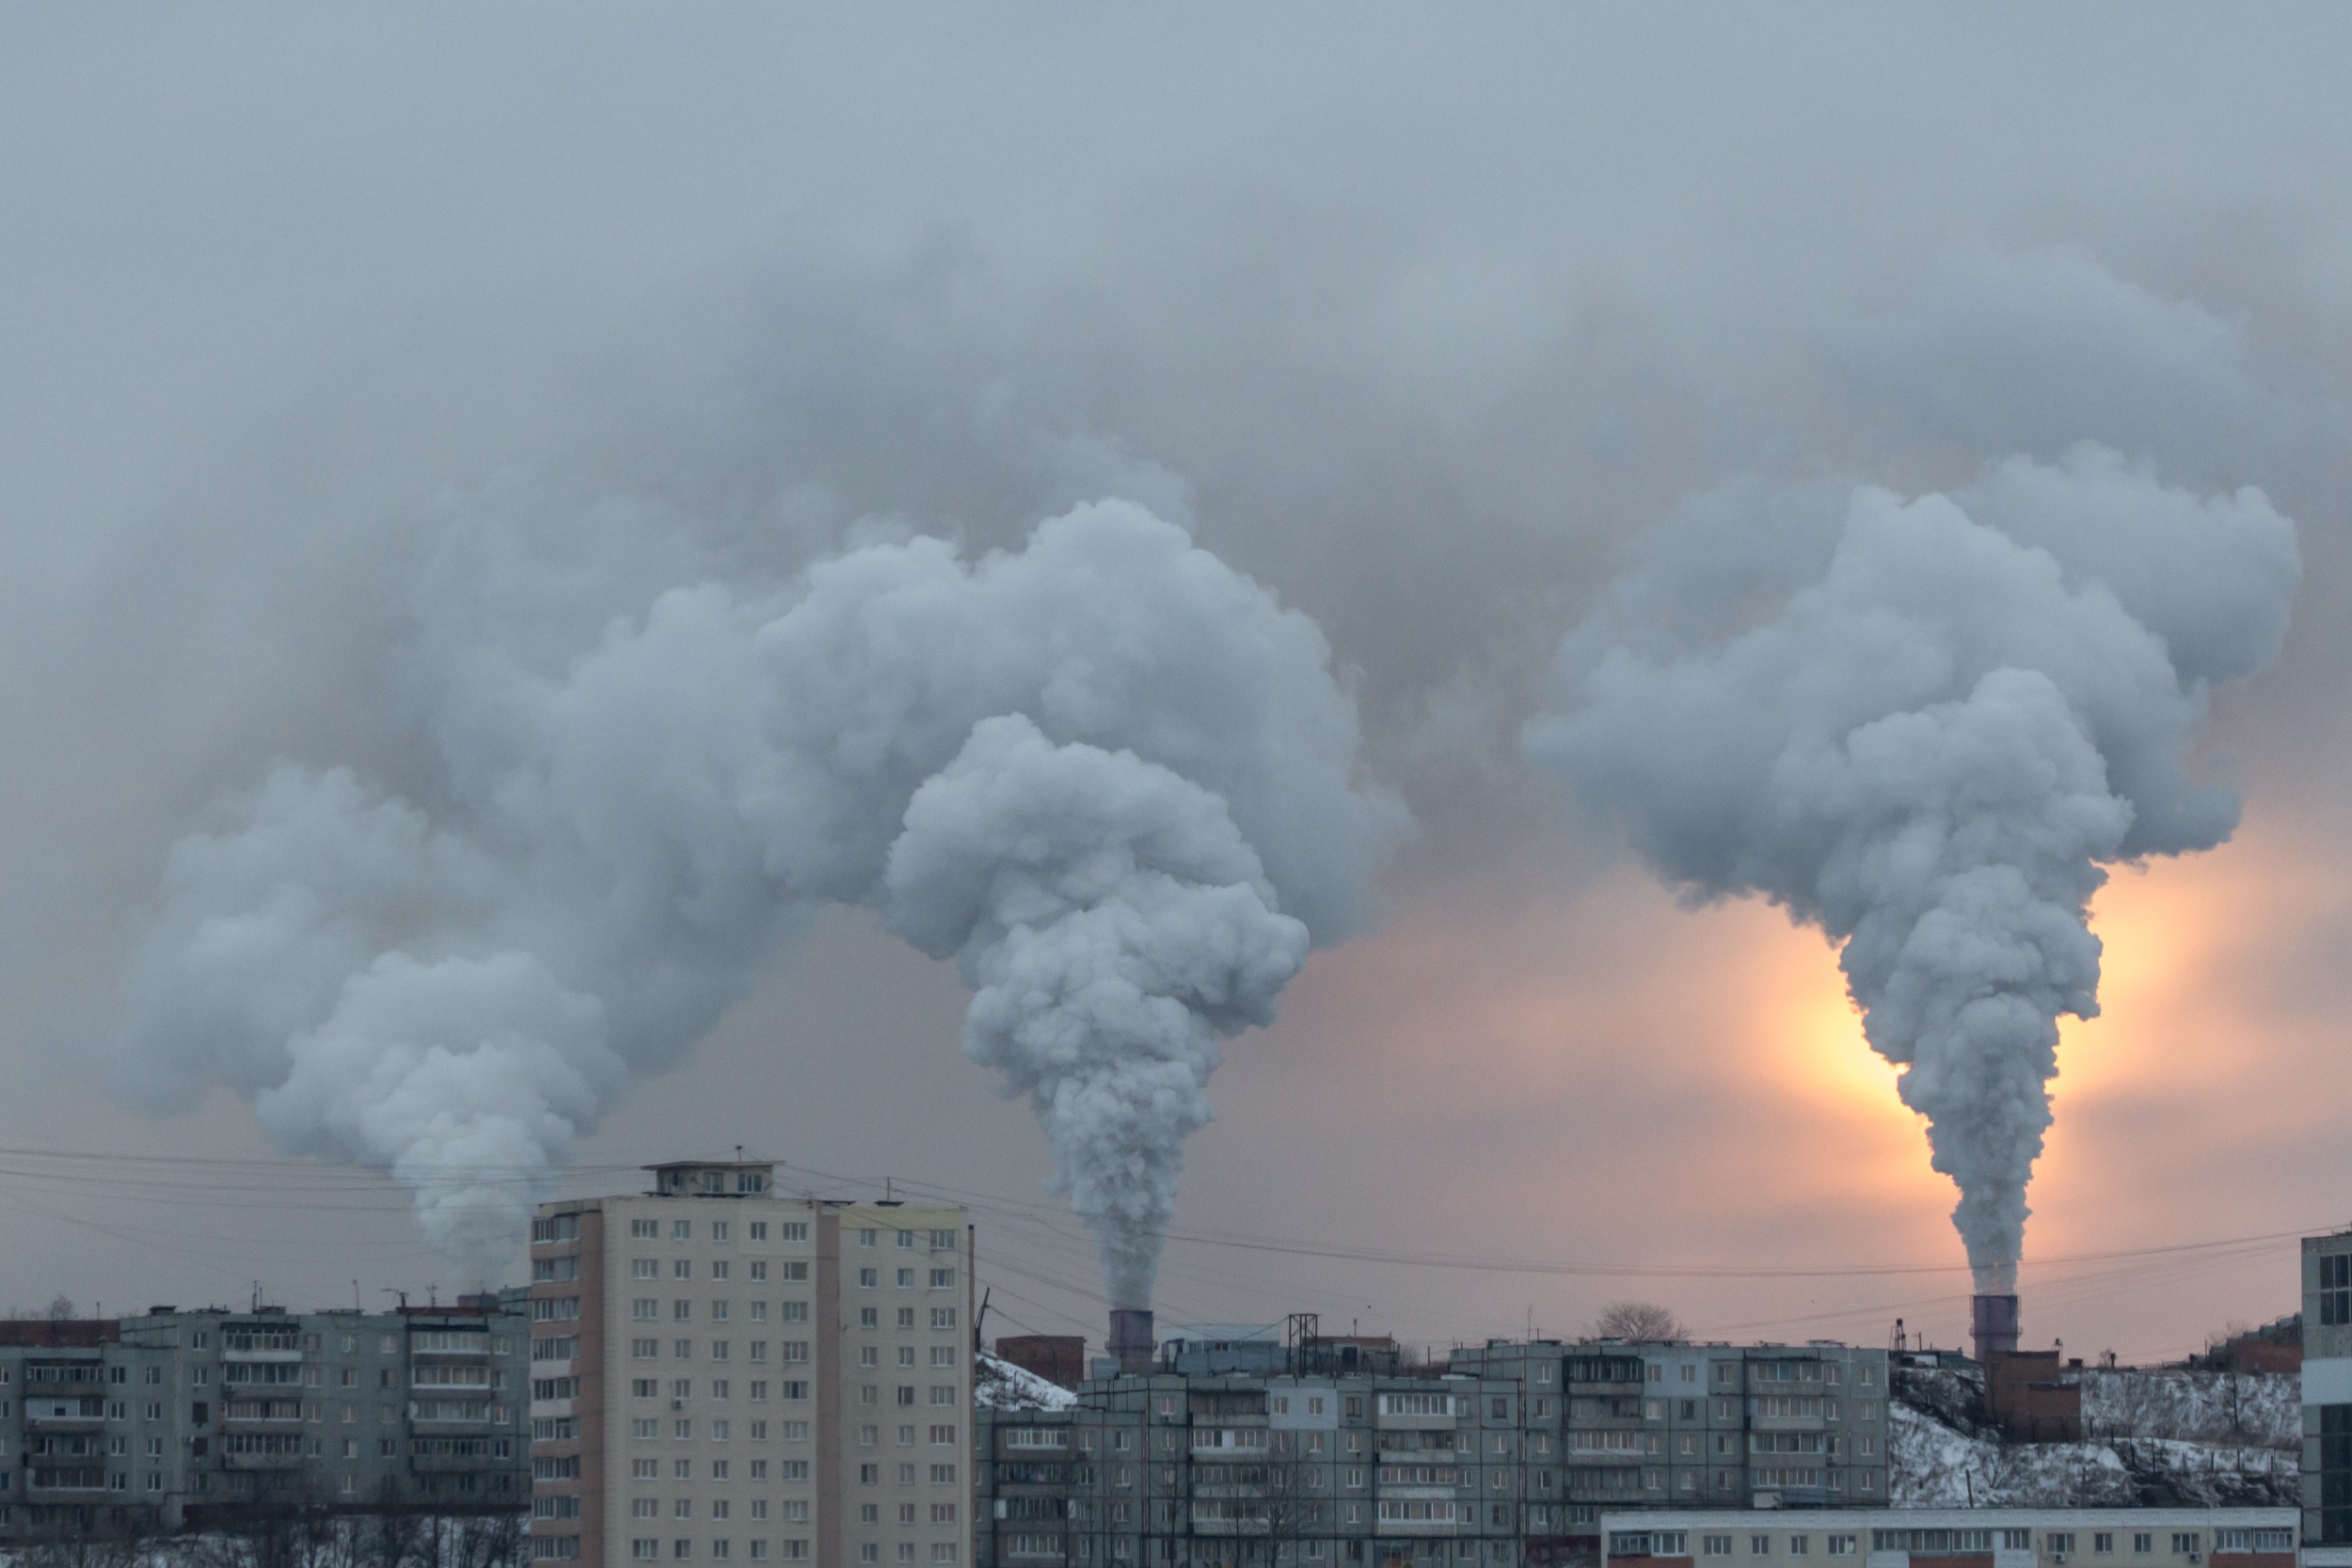 Ações de descarbonização de planos nacionais não conseguirão levar a uma completa eliminação das fontes fósseis, indicam estudos (foto: Shyjo Shutter)